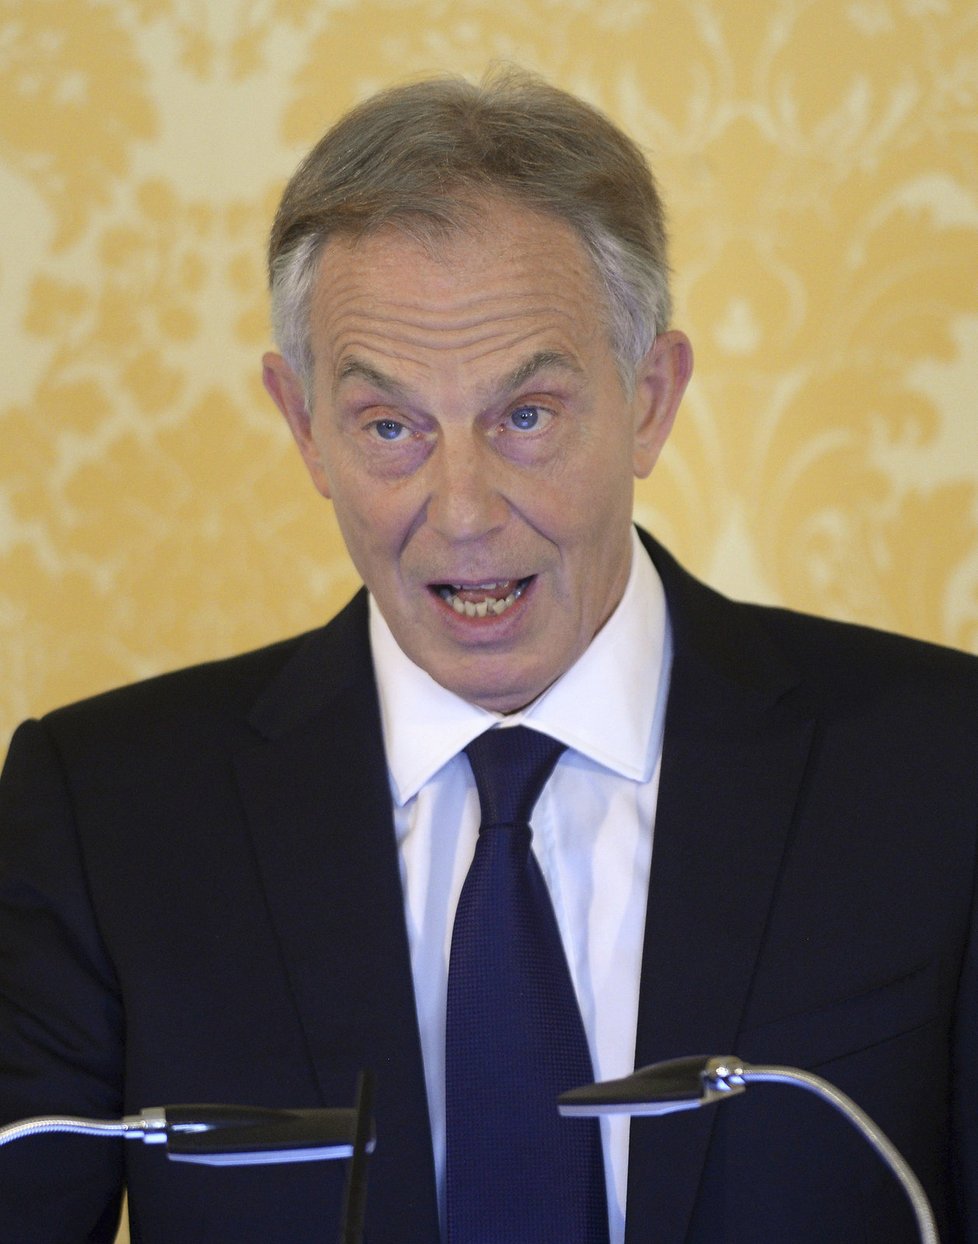 Britský expremiér Tony Blair reagoval na tiskovce na vyšetřující zprávu k zapojení Britů do mise v Iráku